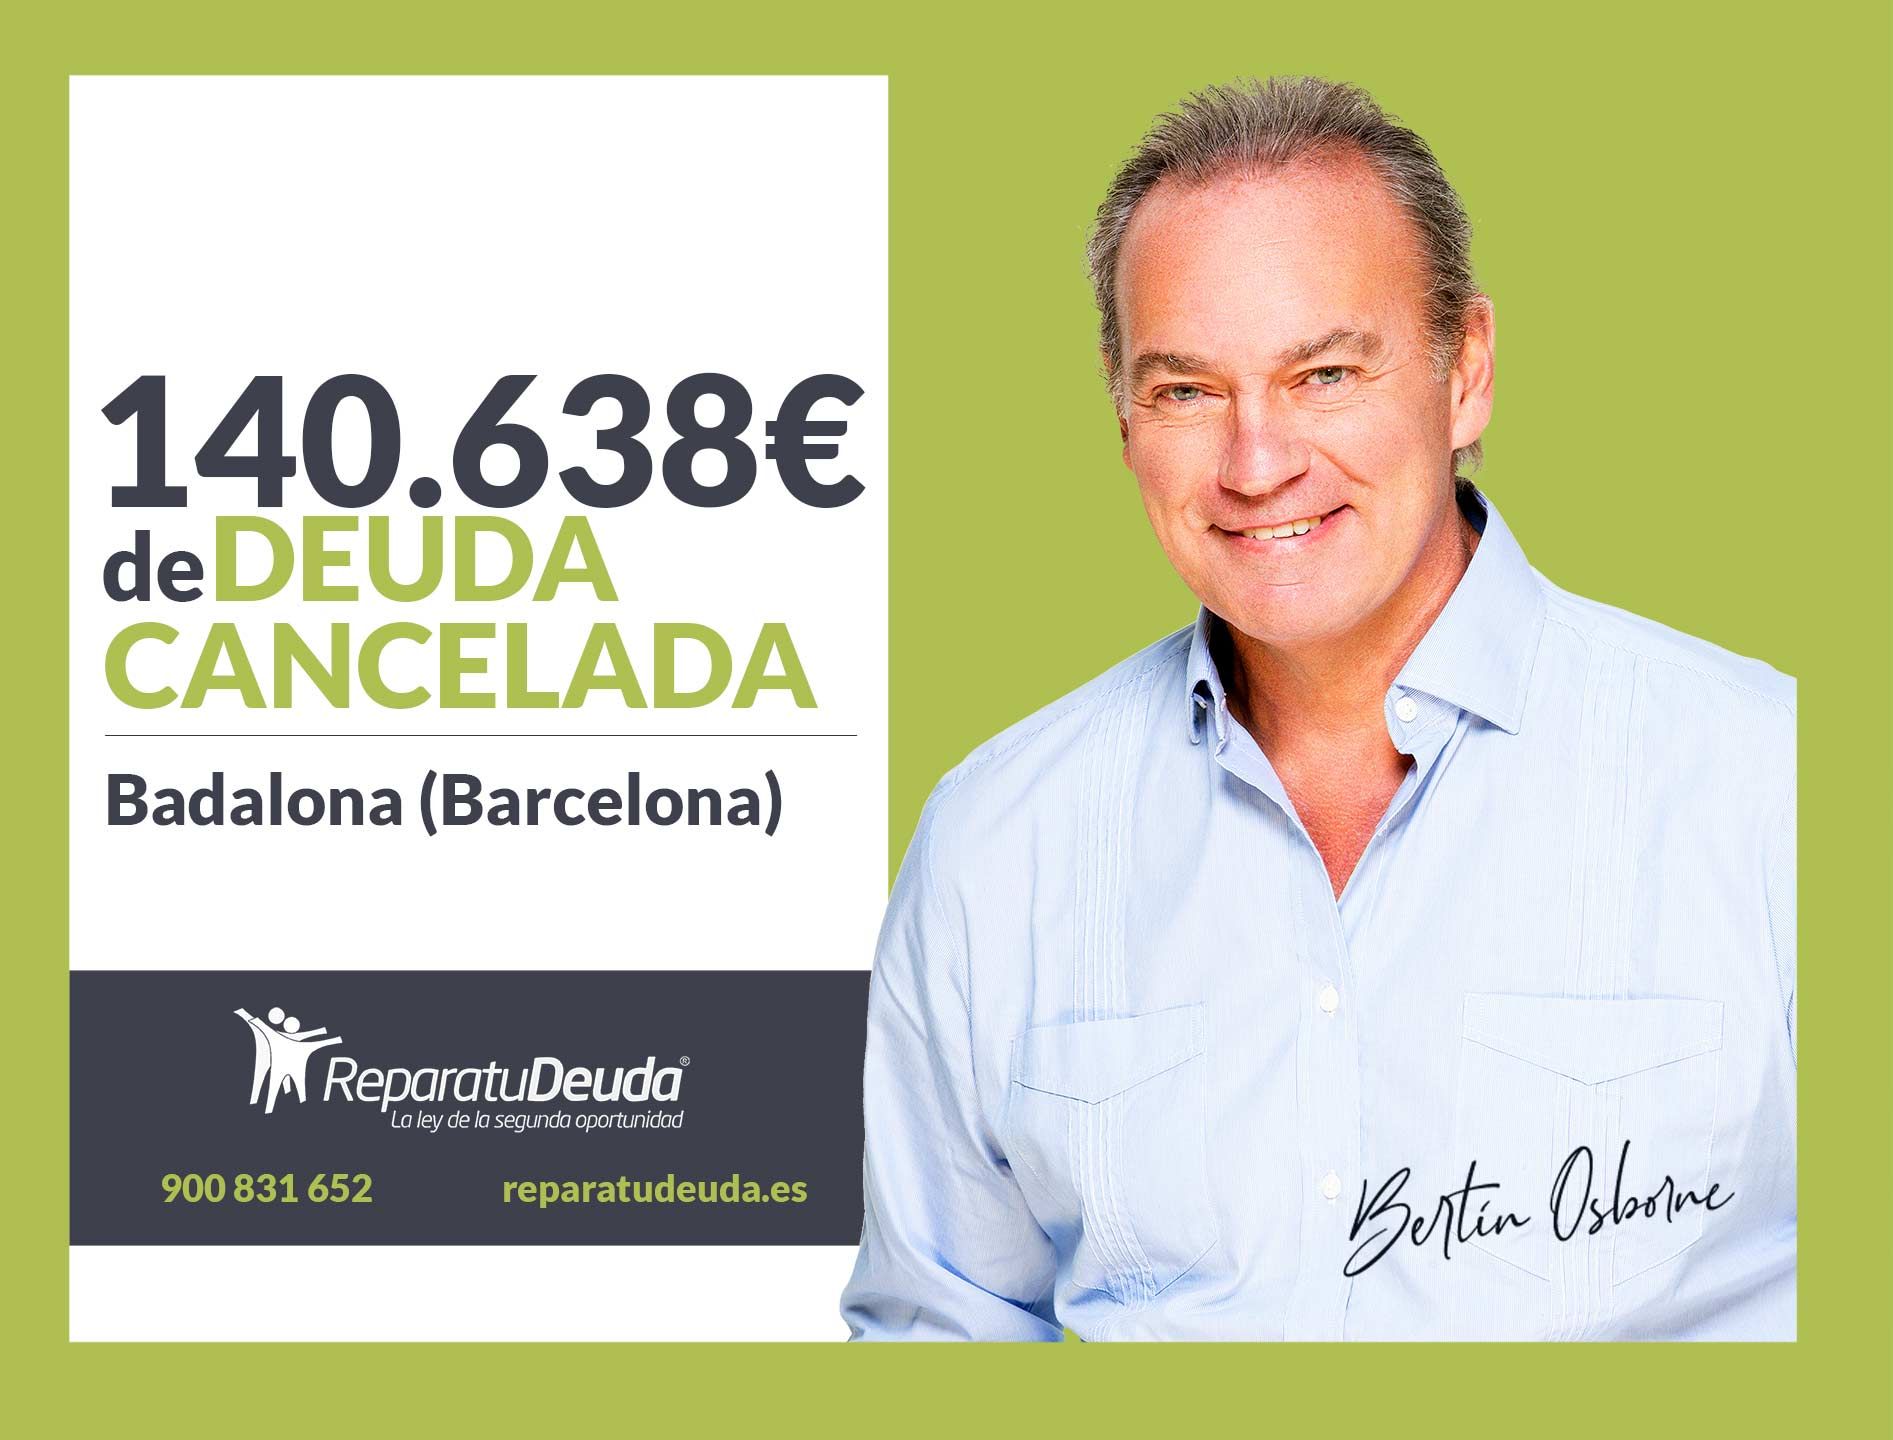 Repara tu Deuda Abogados cancela 140.638? en Badalona (Barcelona) con la Ley de Segunda Oportunidad